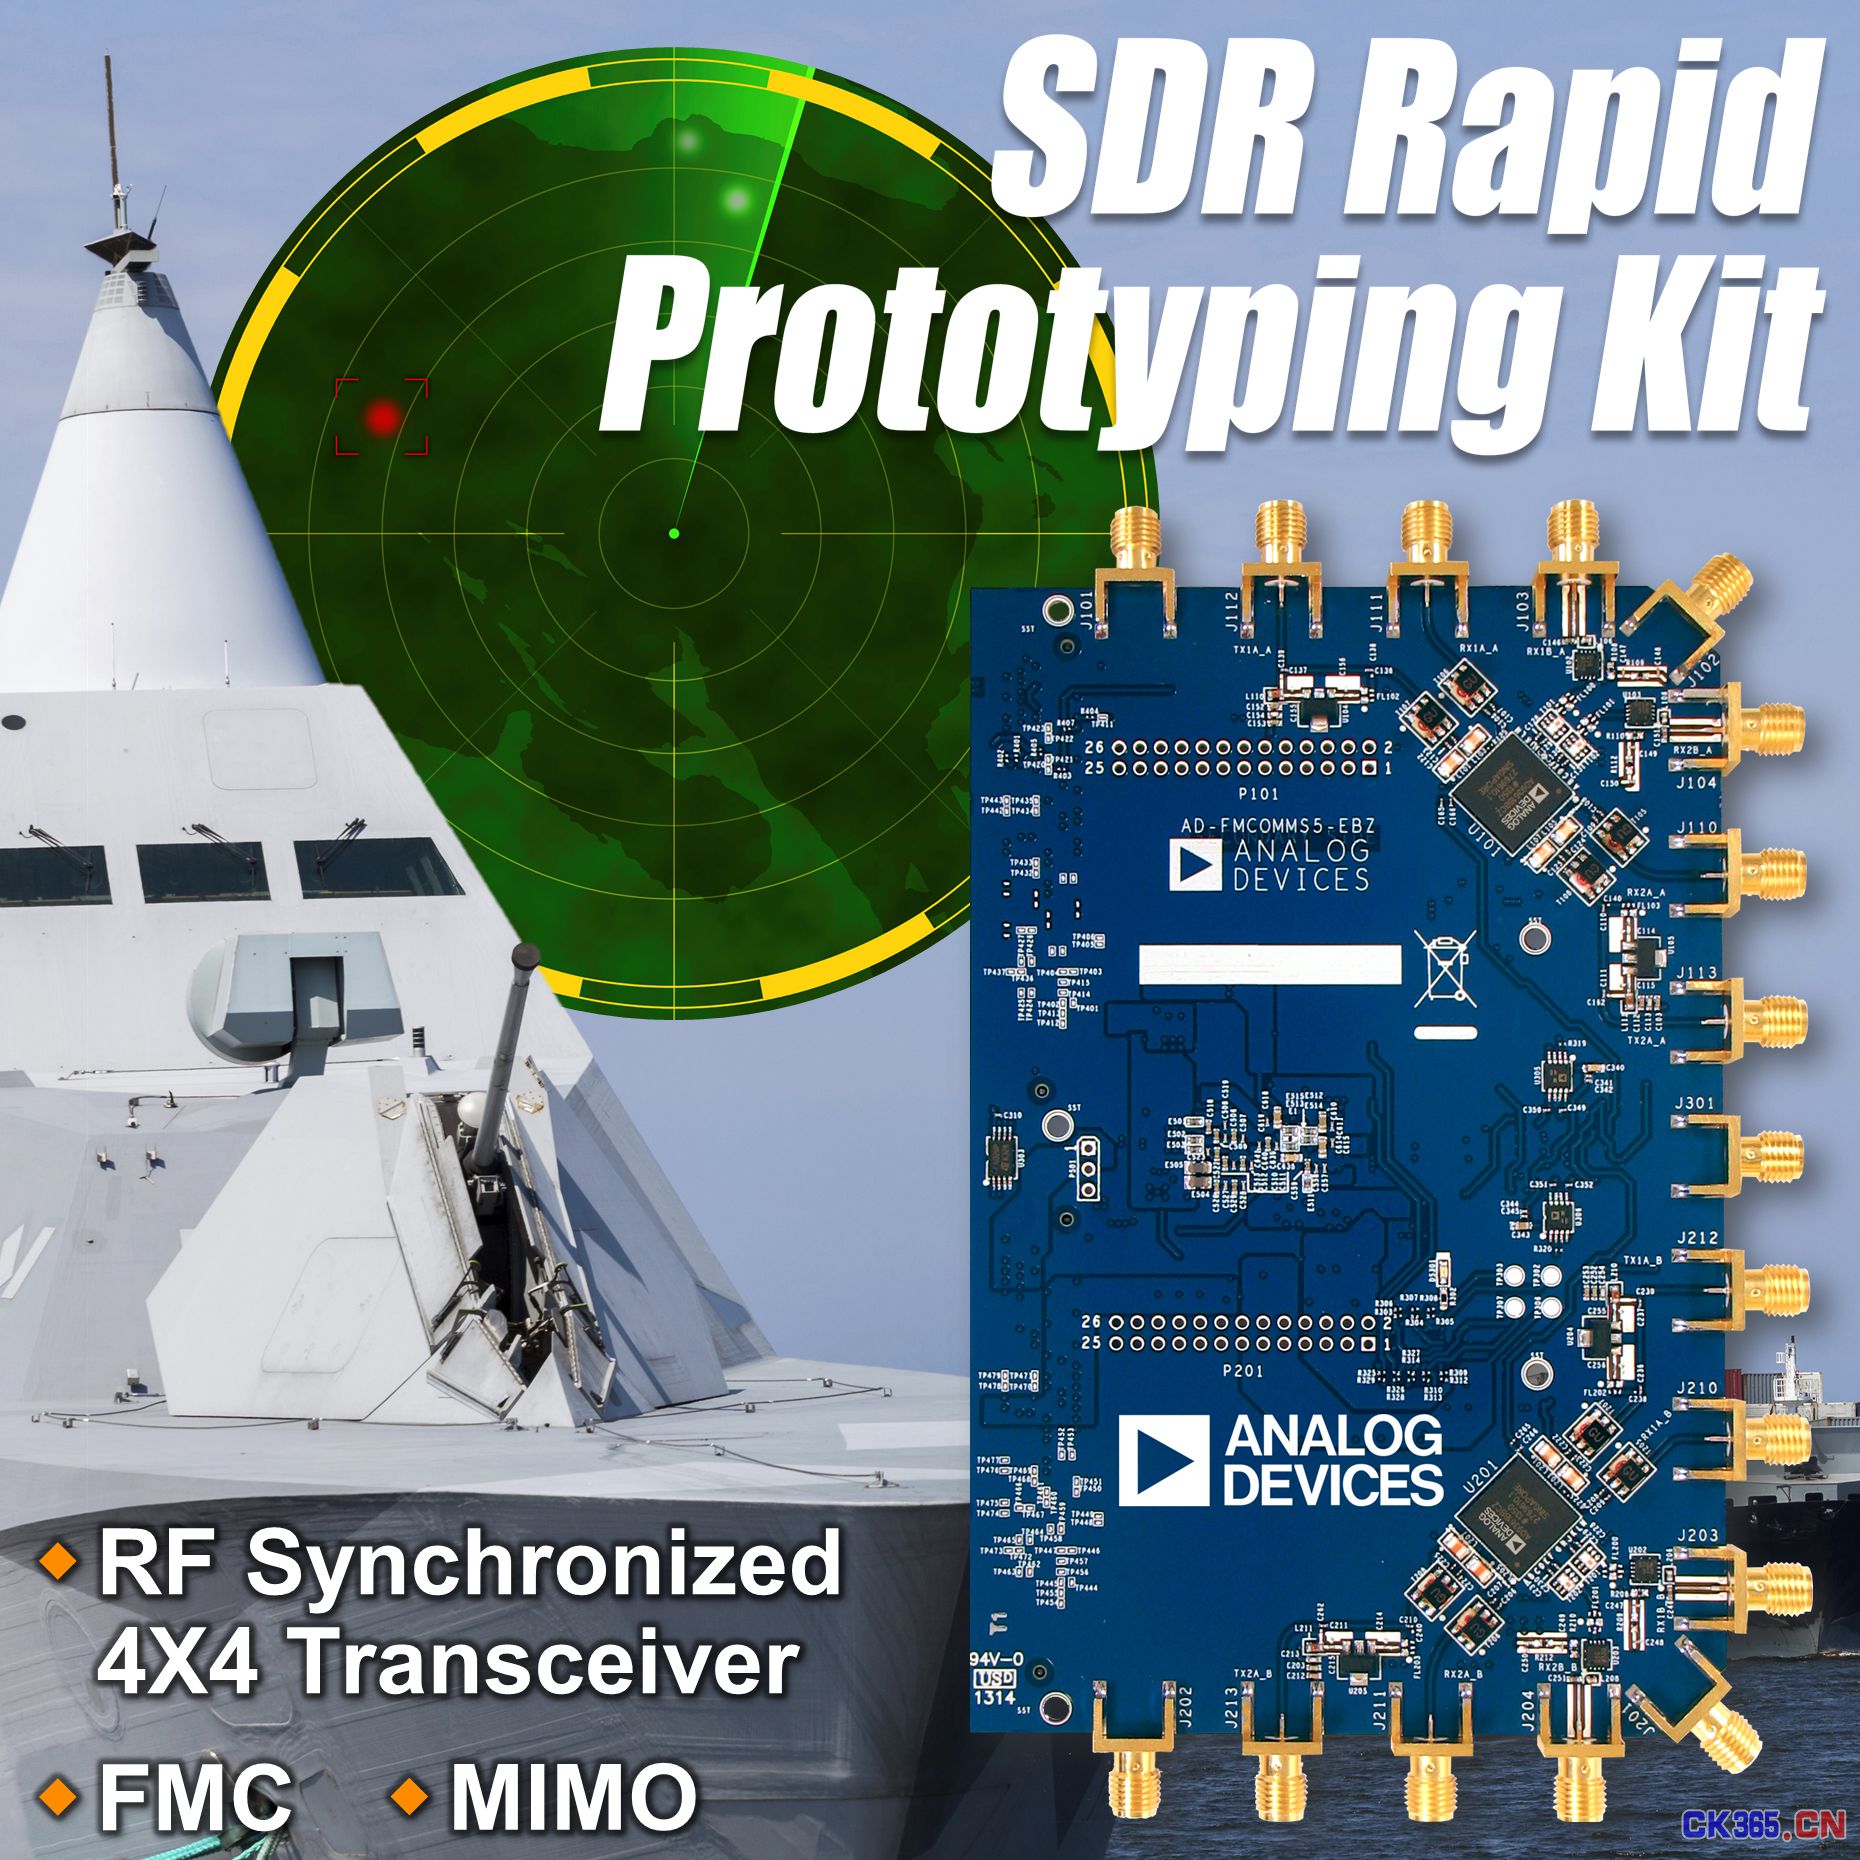 SDR用首款同步射频收发器快速原型制作套件上市